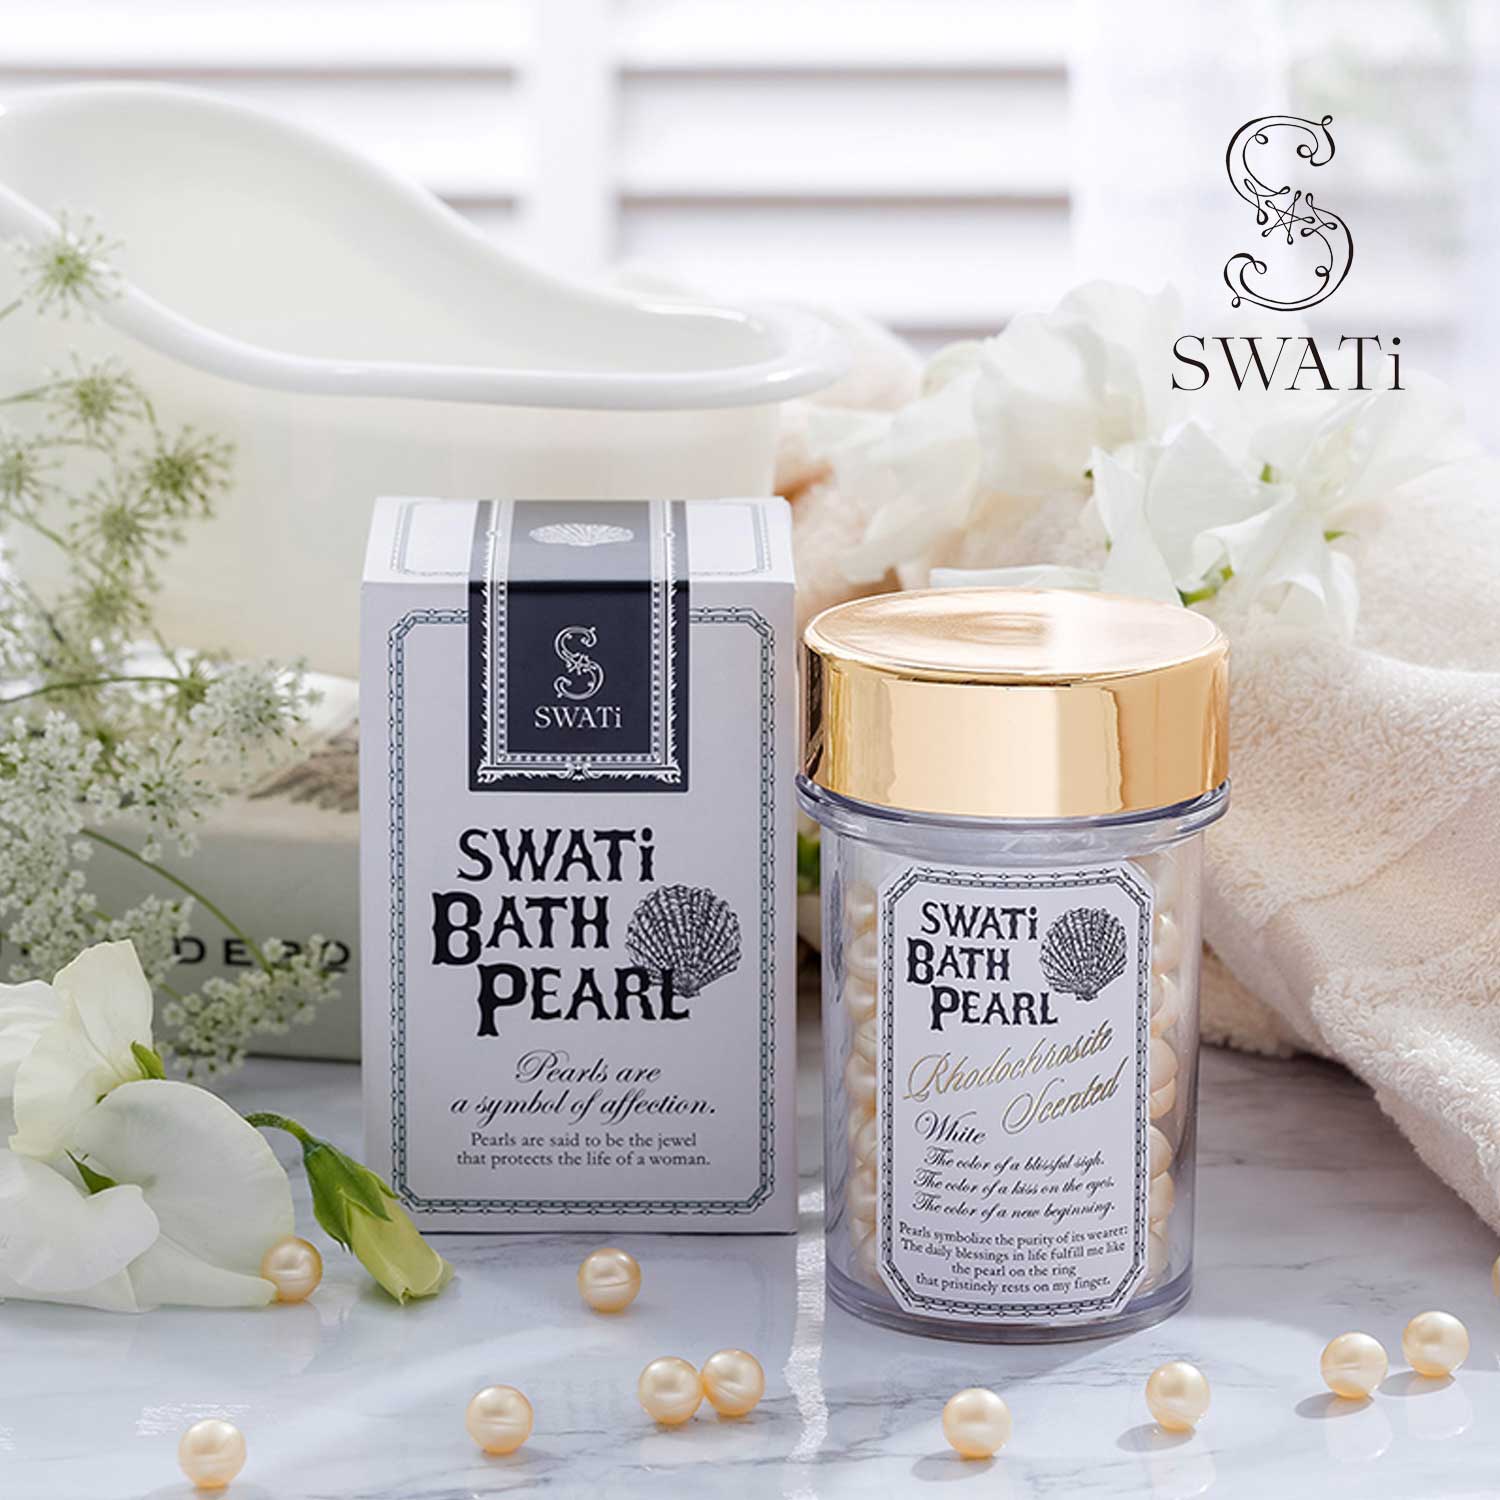 SWATI BATH PEARL バスパール 入浴剤 3つセット - 入浴剤・バスソルト